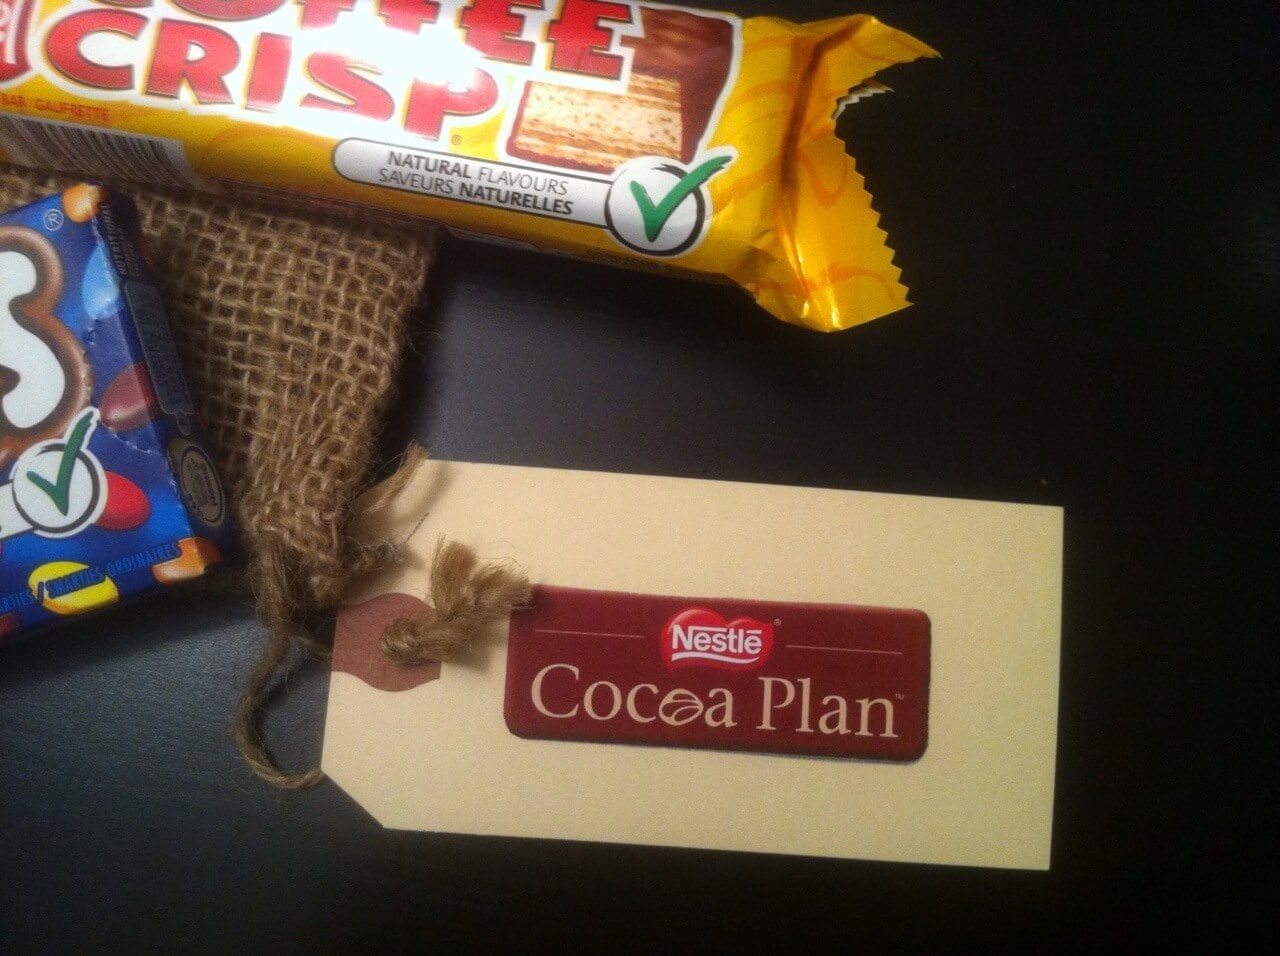 Nestlé Cocoa Plan